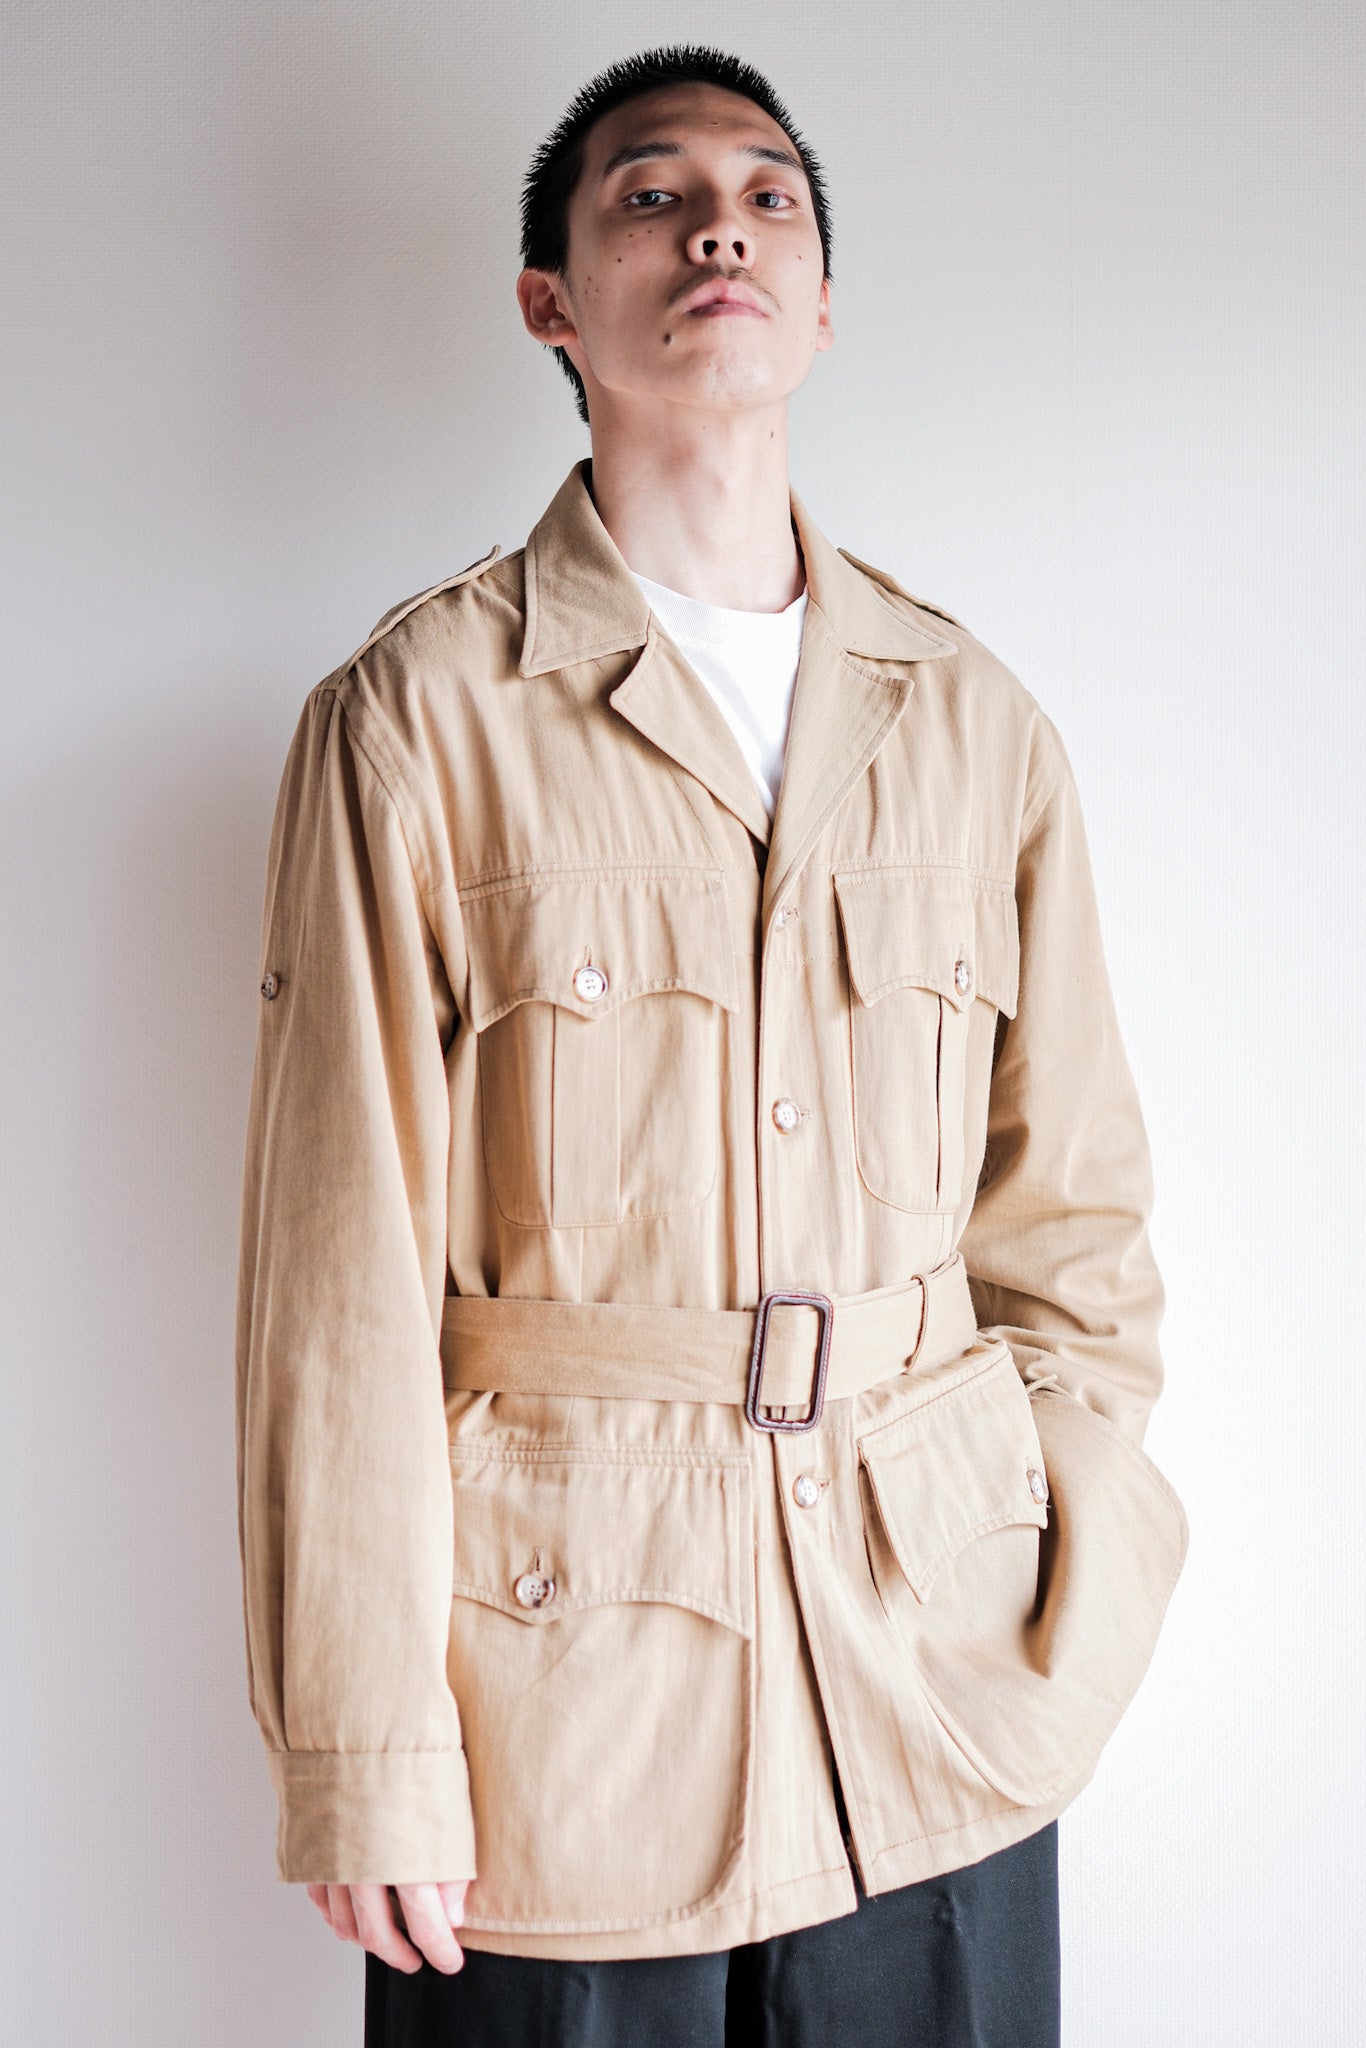 [~80 年代] Willis&Geiger 澳洲叢林夾克尺寸 38“美國製造”